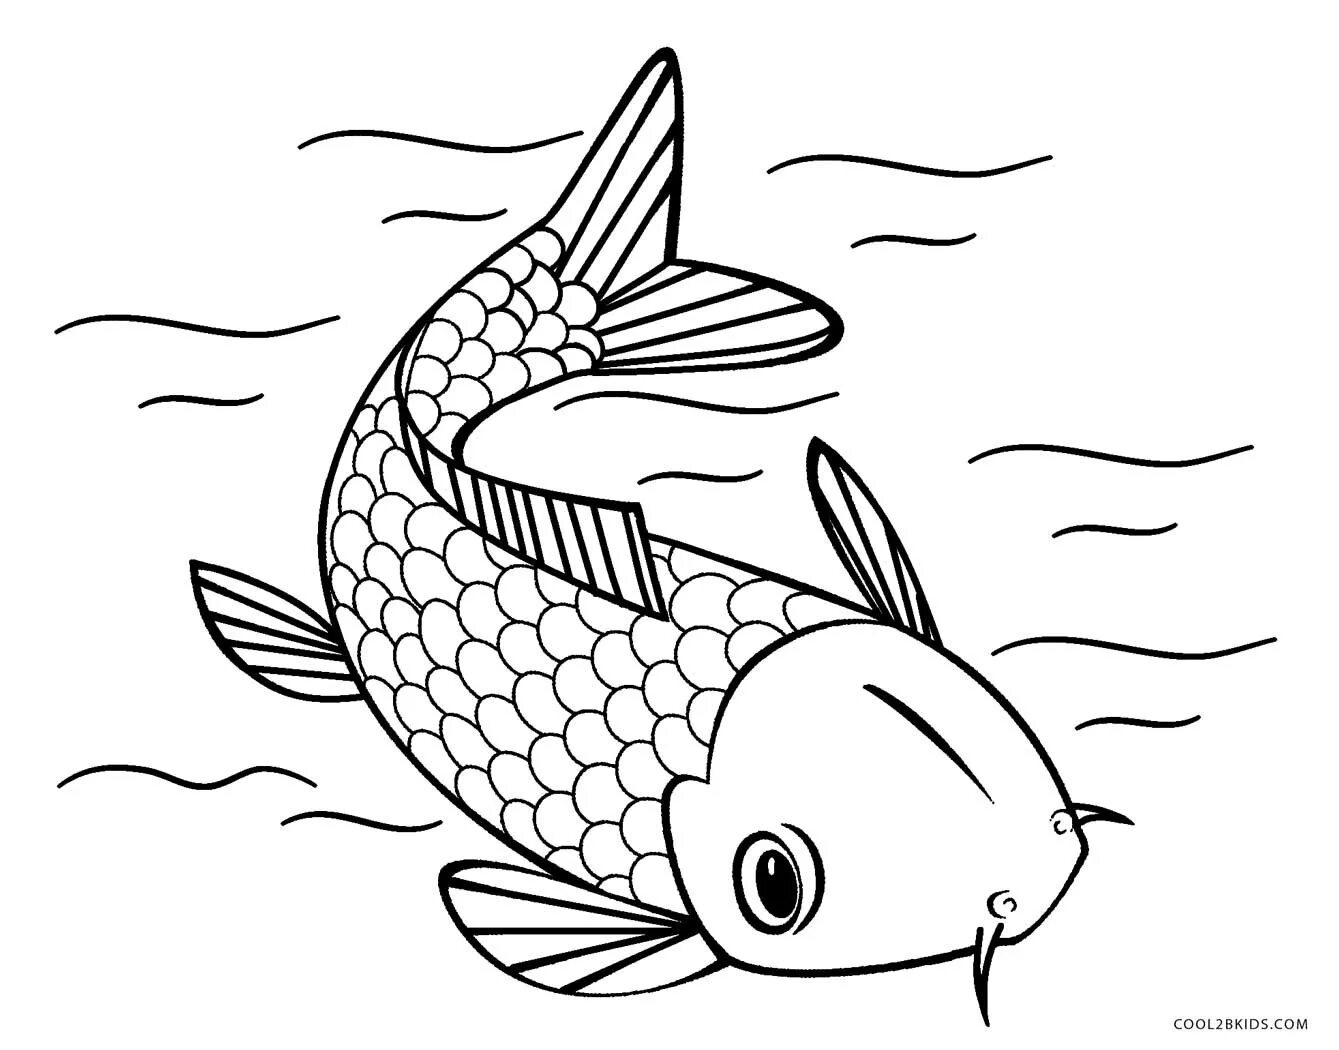 Раскраска рыбы для детей 7 лет. Рыбка сомик аквариумный раскраска. Раскраска рыбка. Рыба раскраска для детей. Рыбка для раскрашивания для детей.